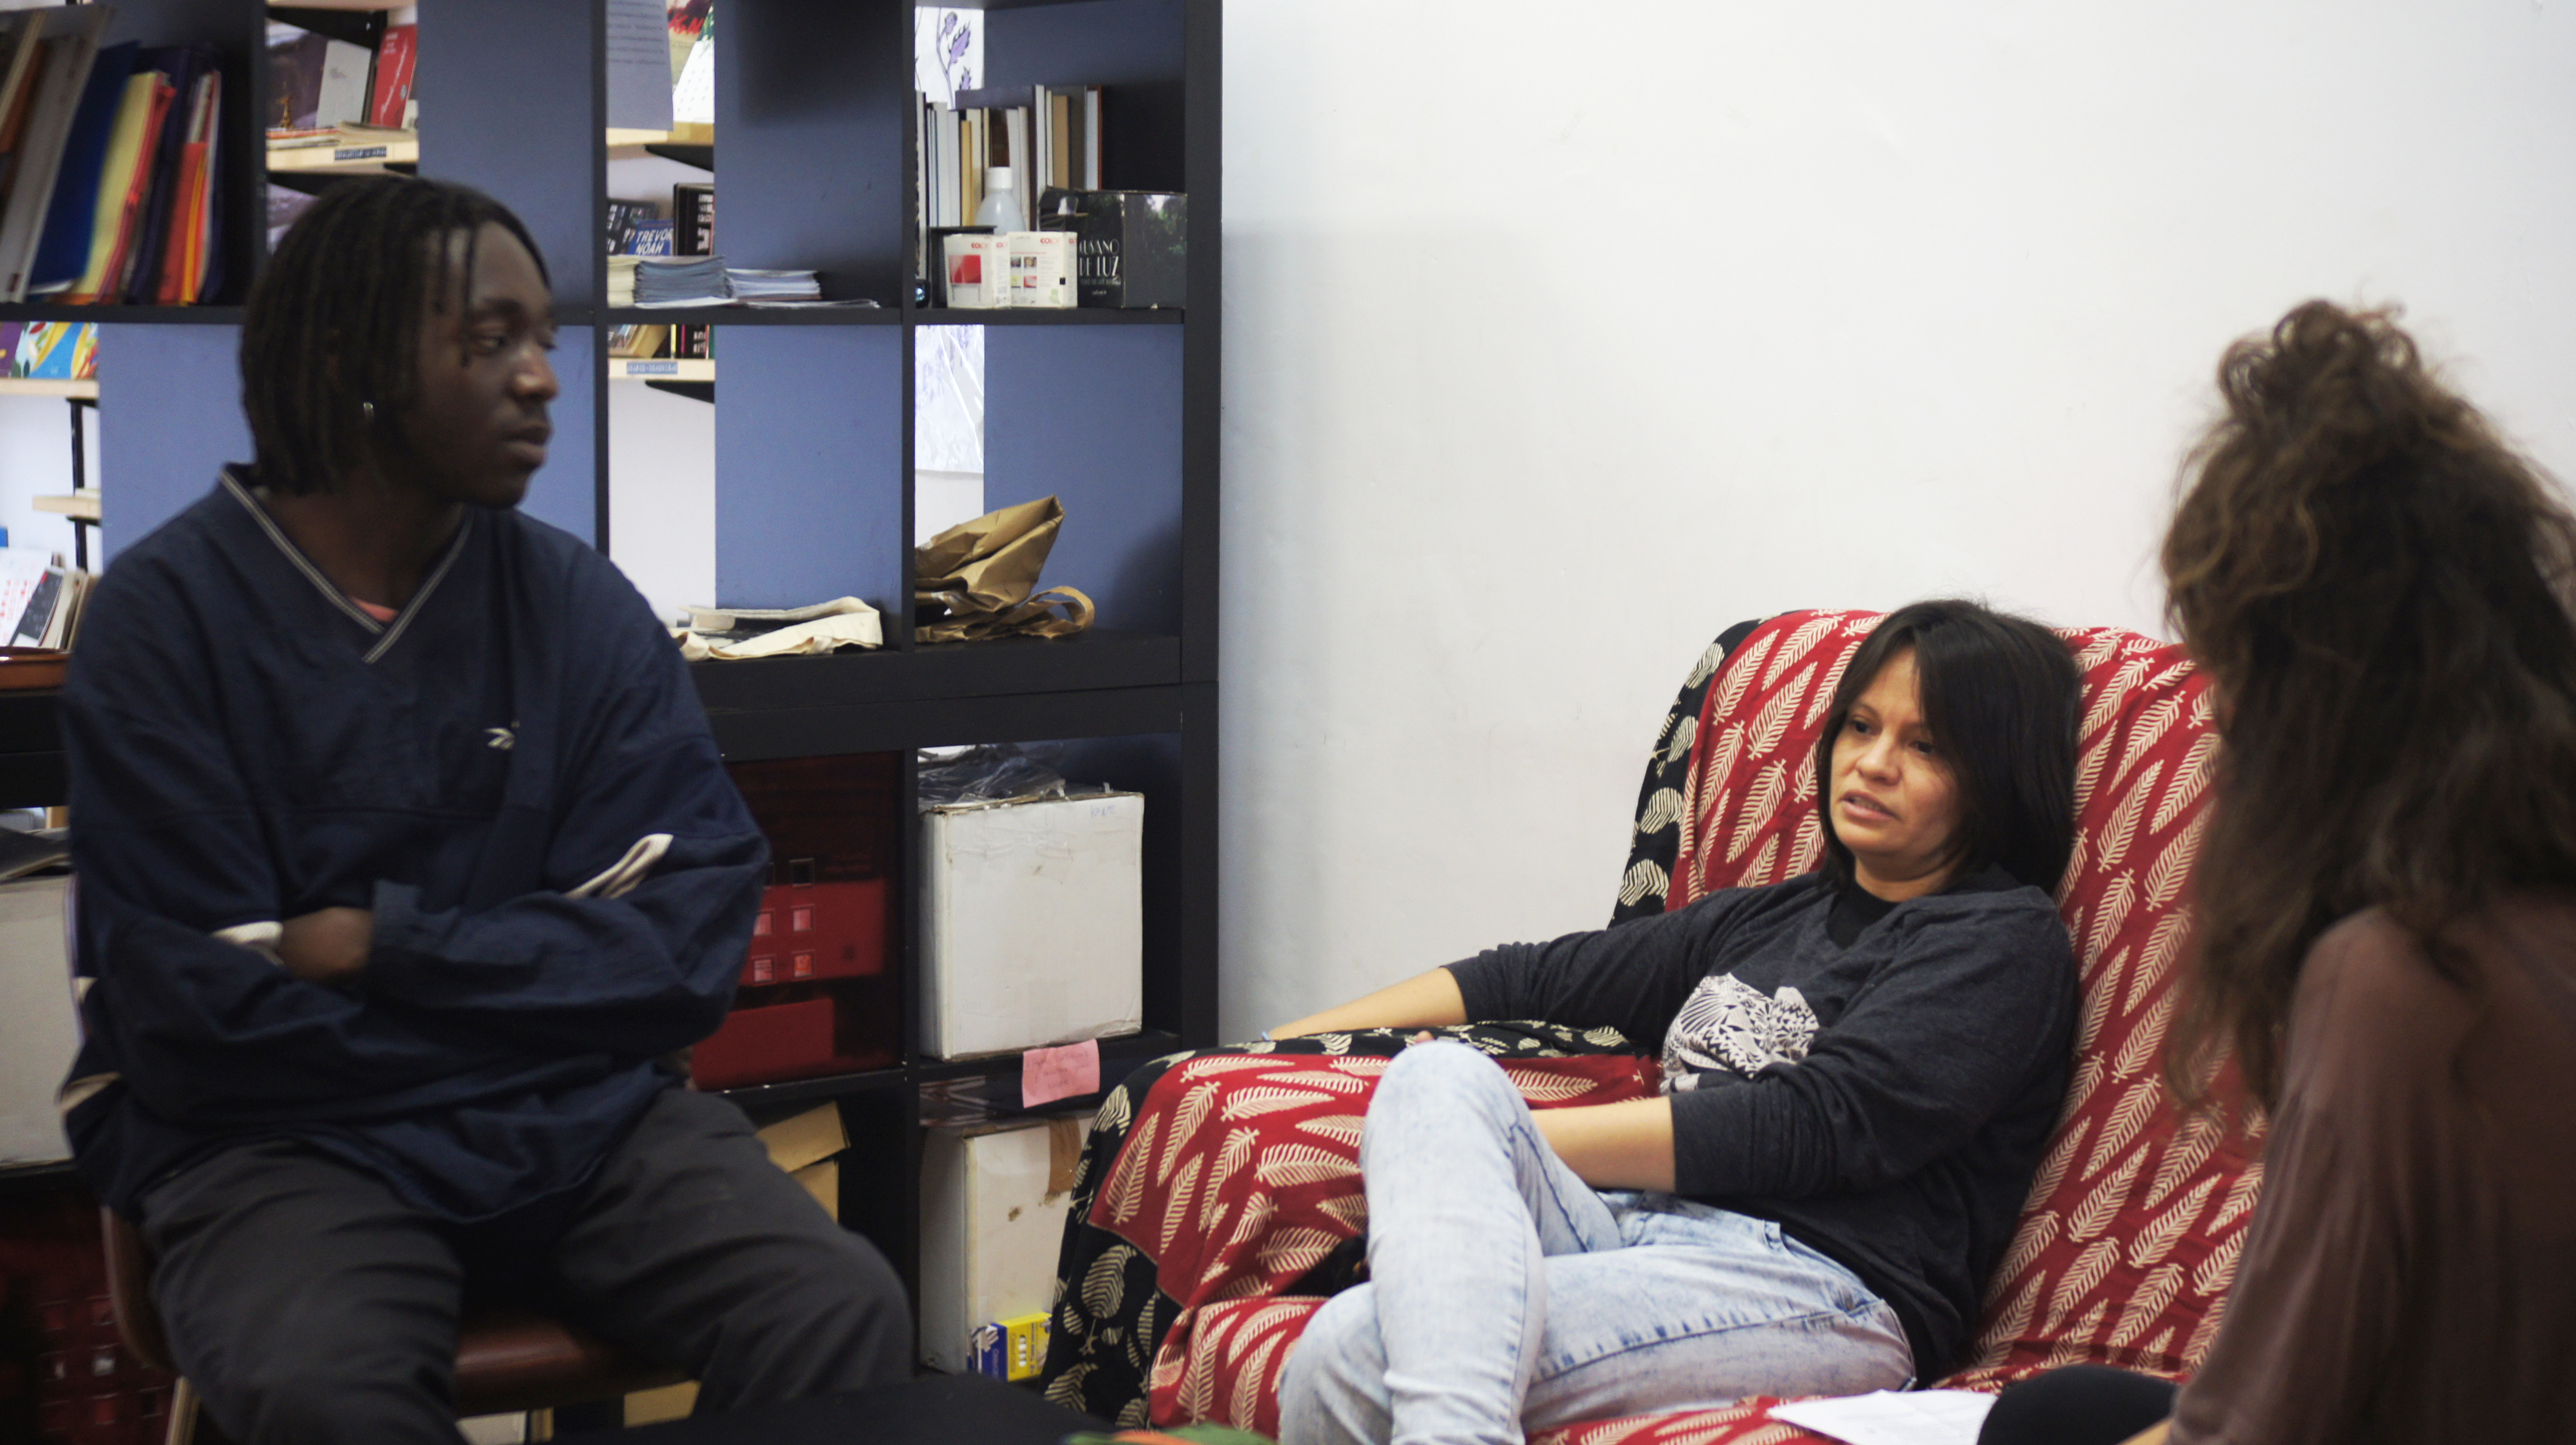 Una noia (Guadalupe) asseguda a un sofà i un noi (George) assegut a una cadira, mentre una altra noia els fa una entrevista. (© Violeta Ospina)